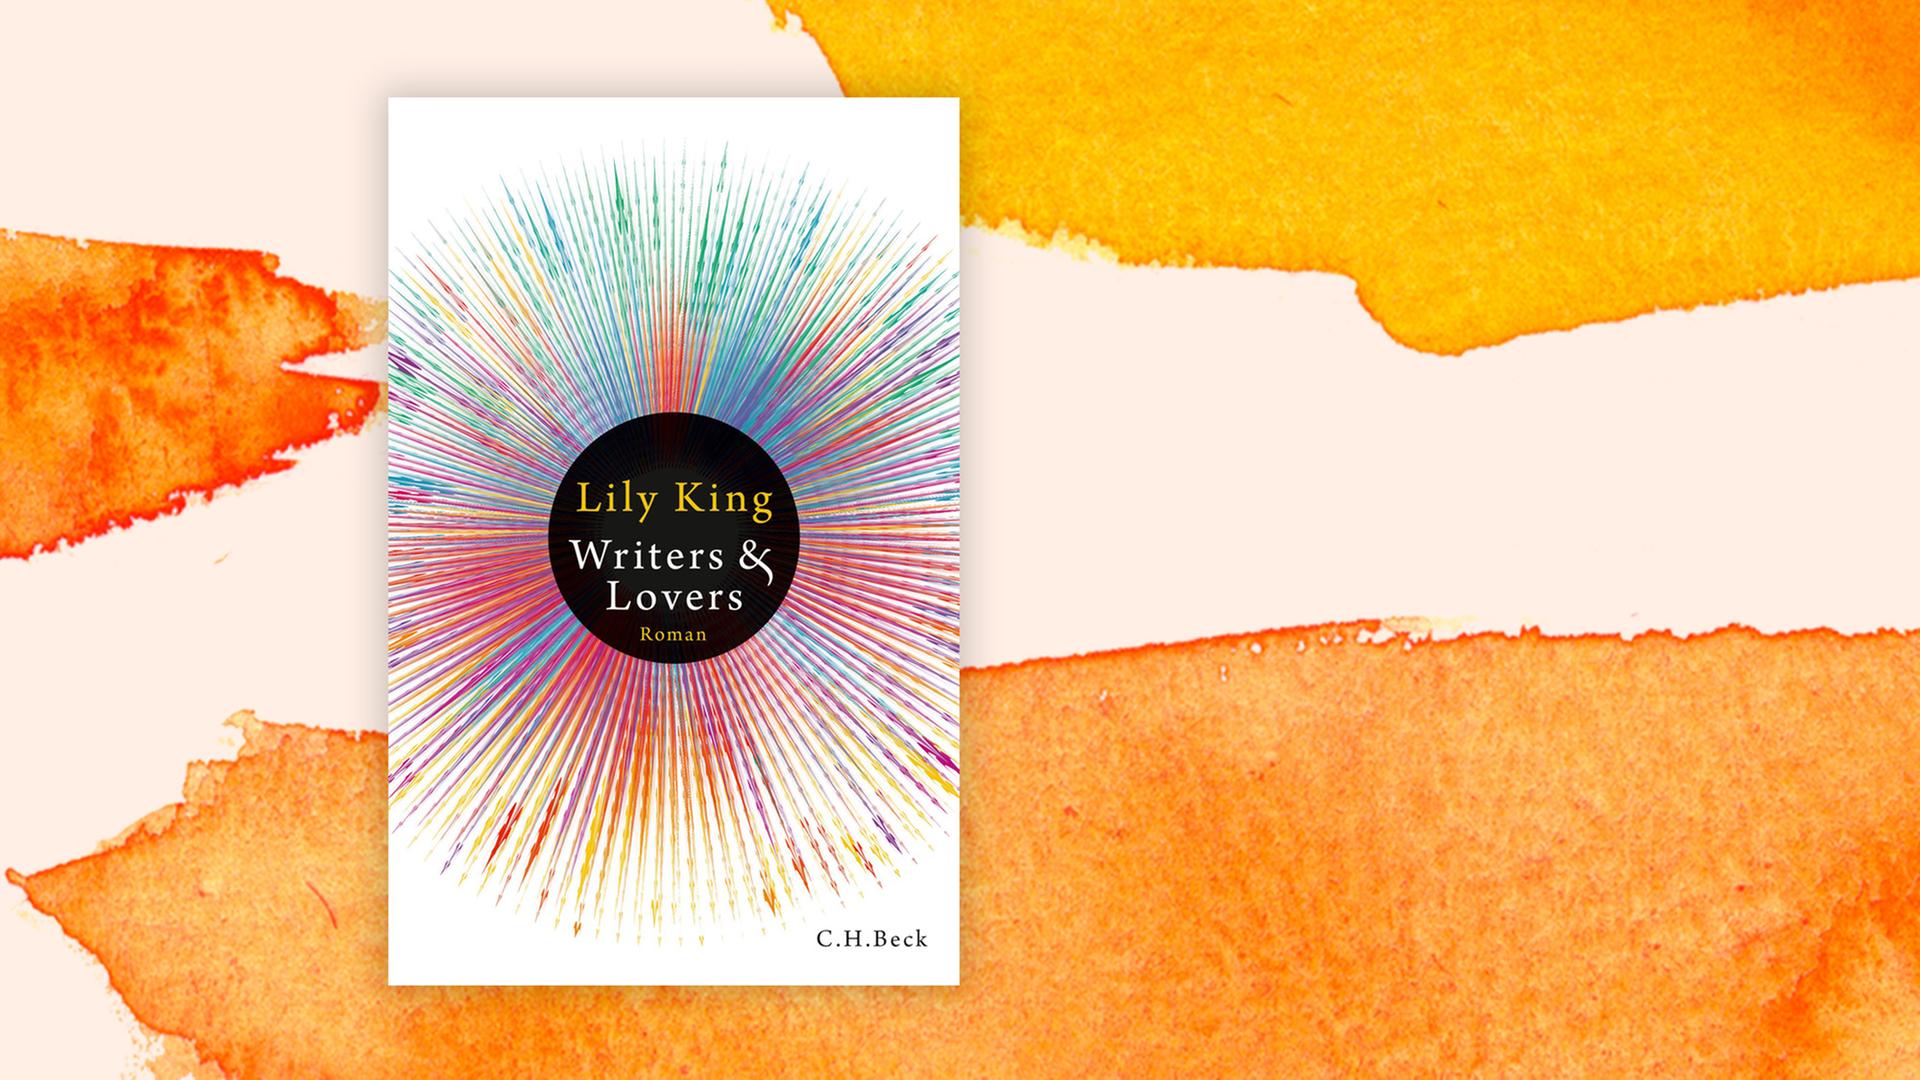 Das Buchcover "Writers & Lovers" von Lily King ist vor einem grafischen Hintergrund zu sehen.